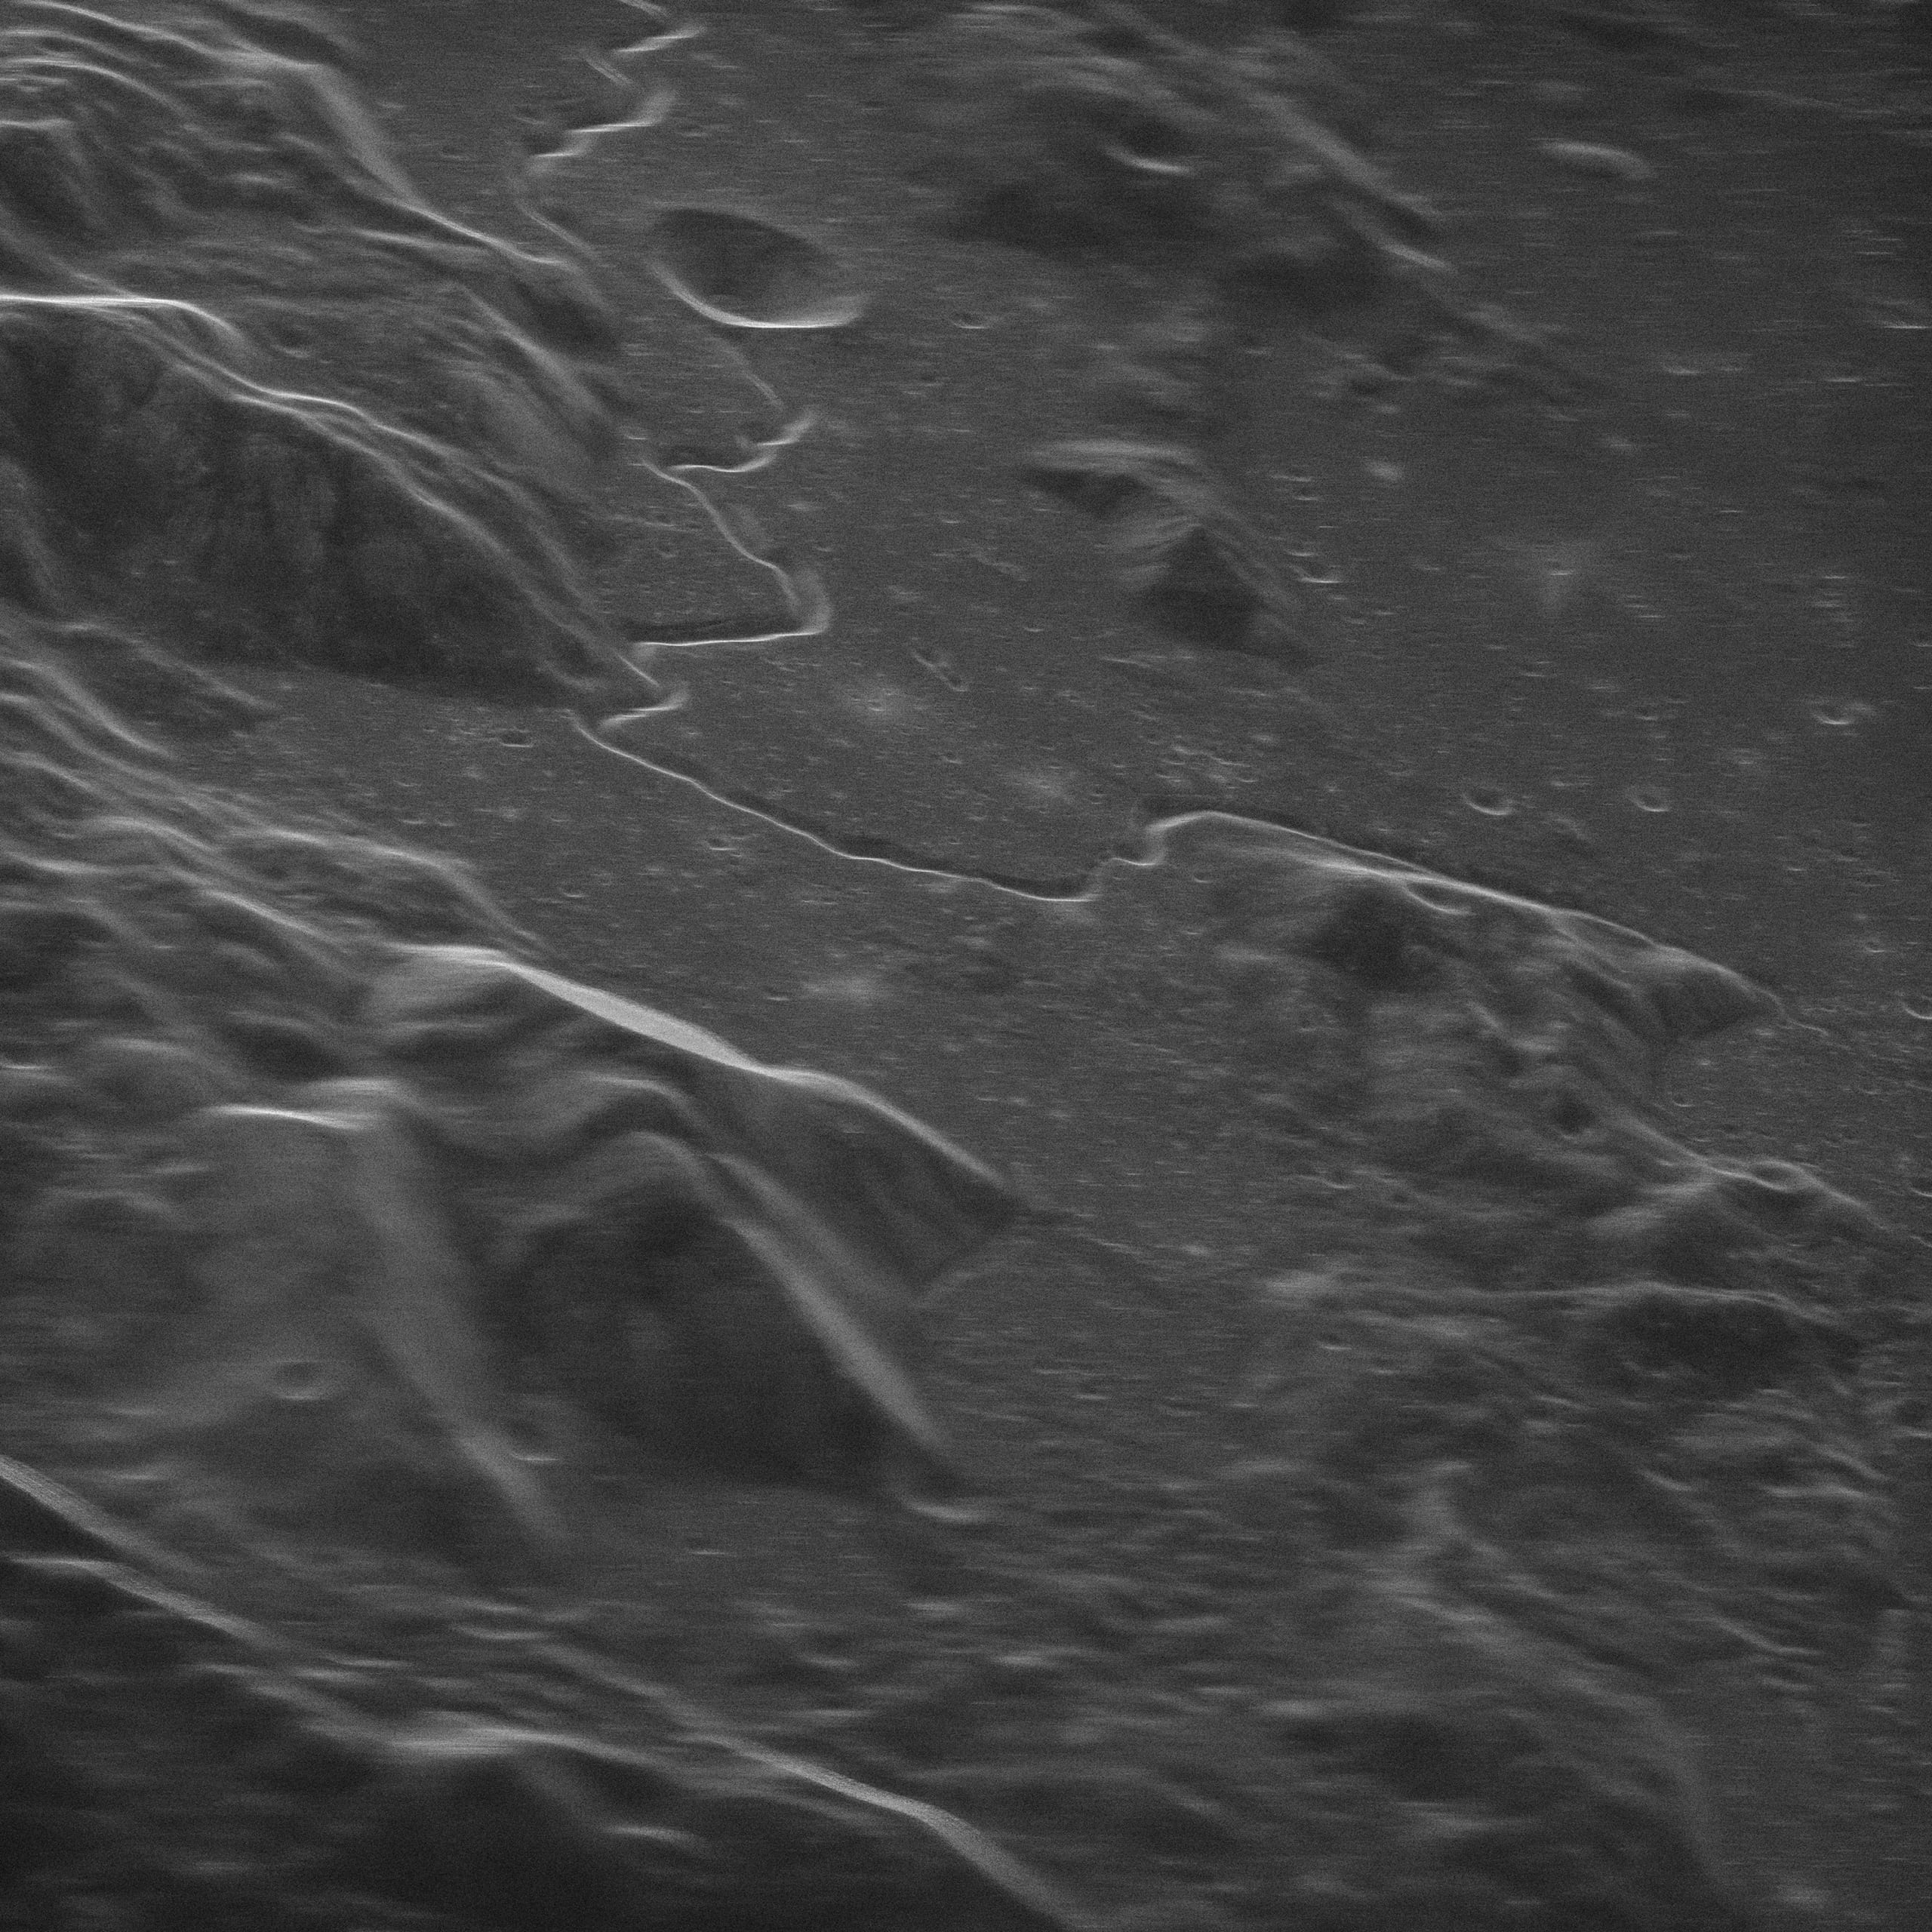 アポロ15号が1971年に上陸した地点のレーダー画像。この画像は地球上から撮影されている。